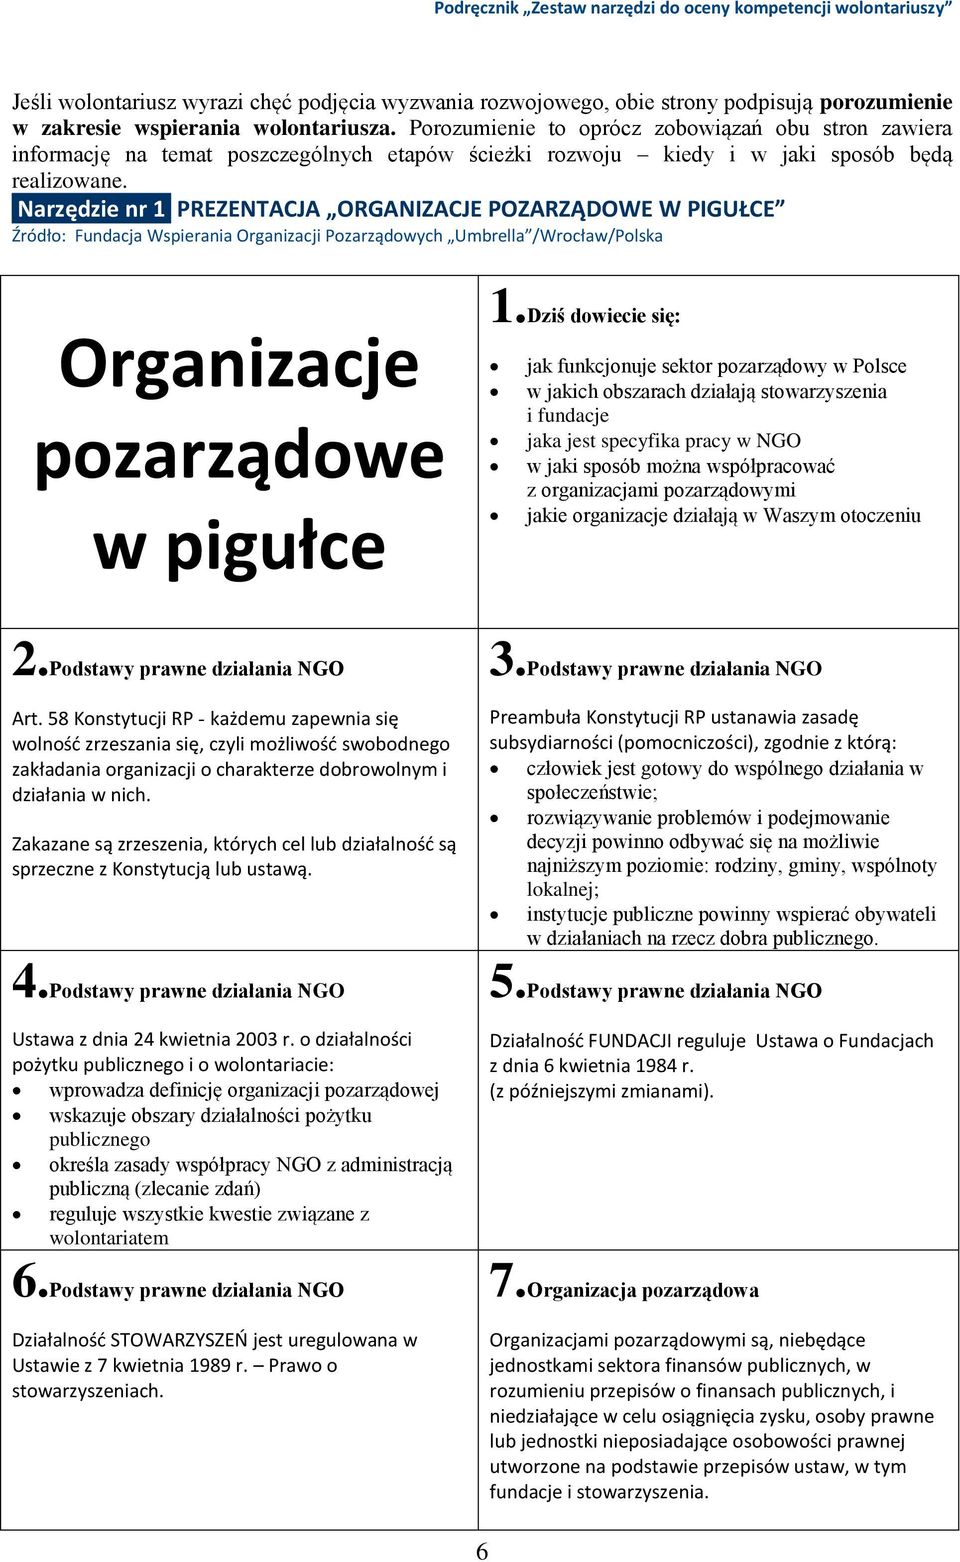 Narzędzie nr 1 PREZENTACJA ORGANIZACJE POZARZĄDOWE W PIGUŁCE Źródło: Fundacja Wspierania Organizacji Pozarządowych Umbrella /Wrocław/Polska Organizacje pozarządowe w pigułce 1.